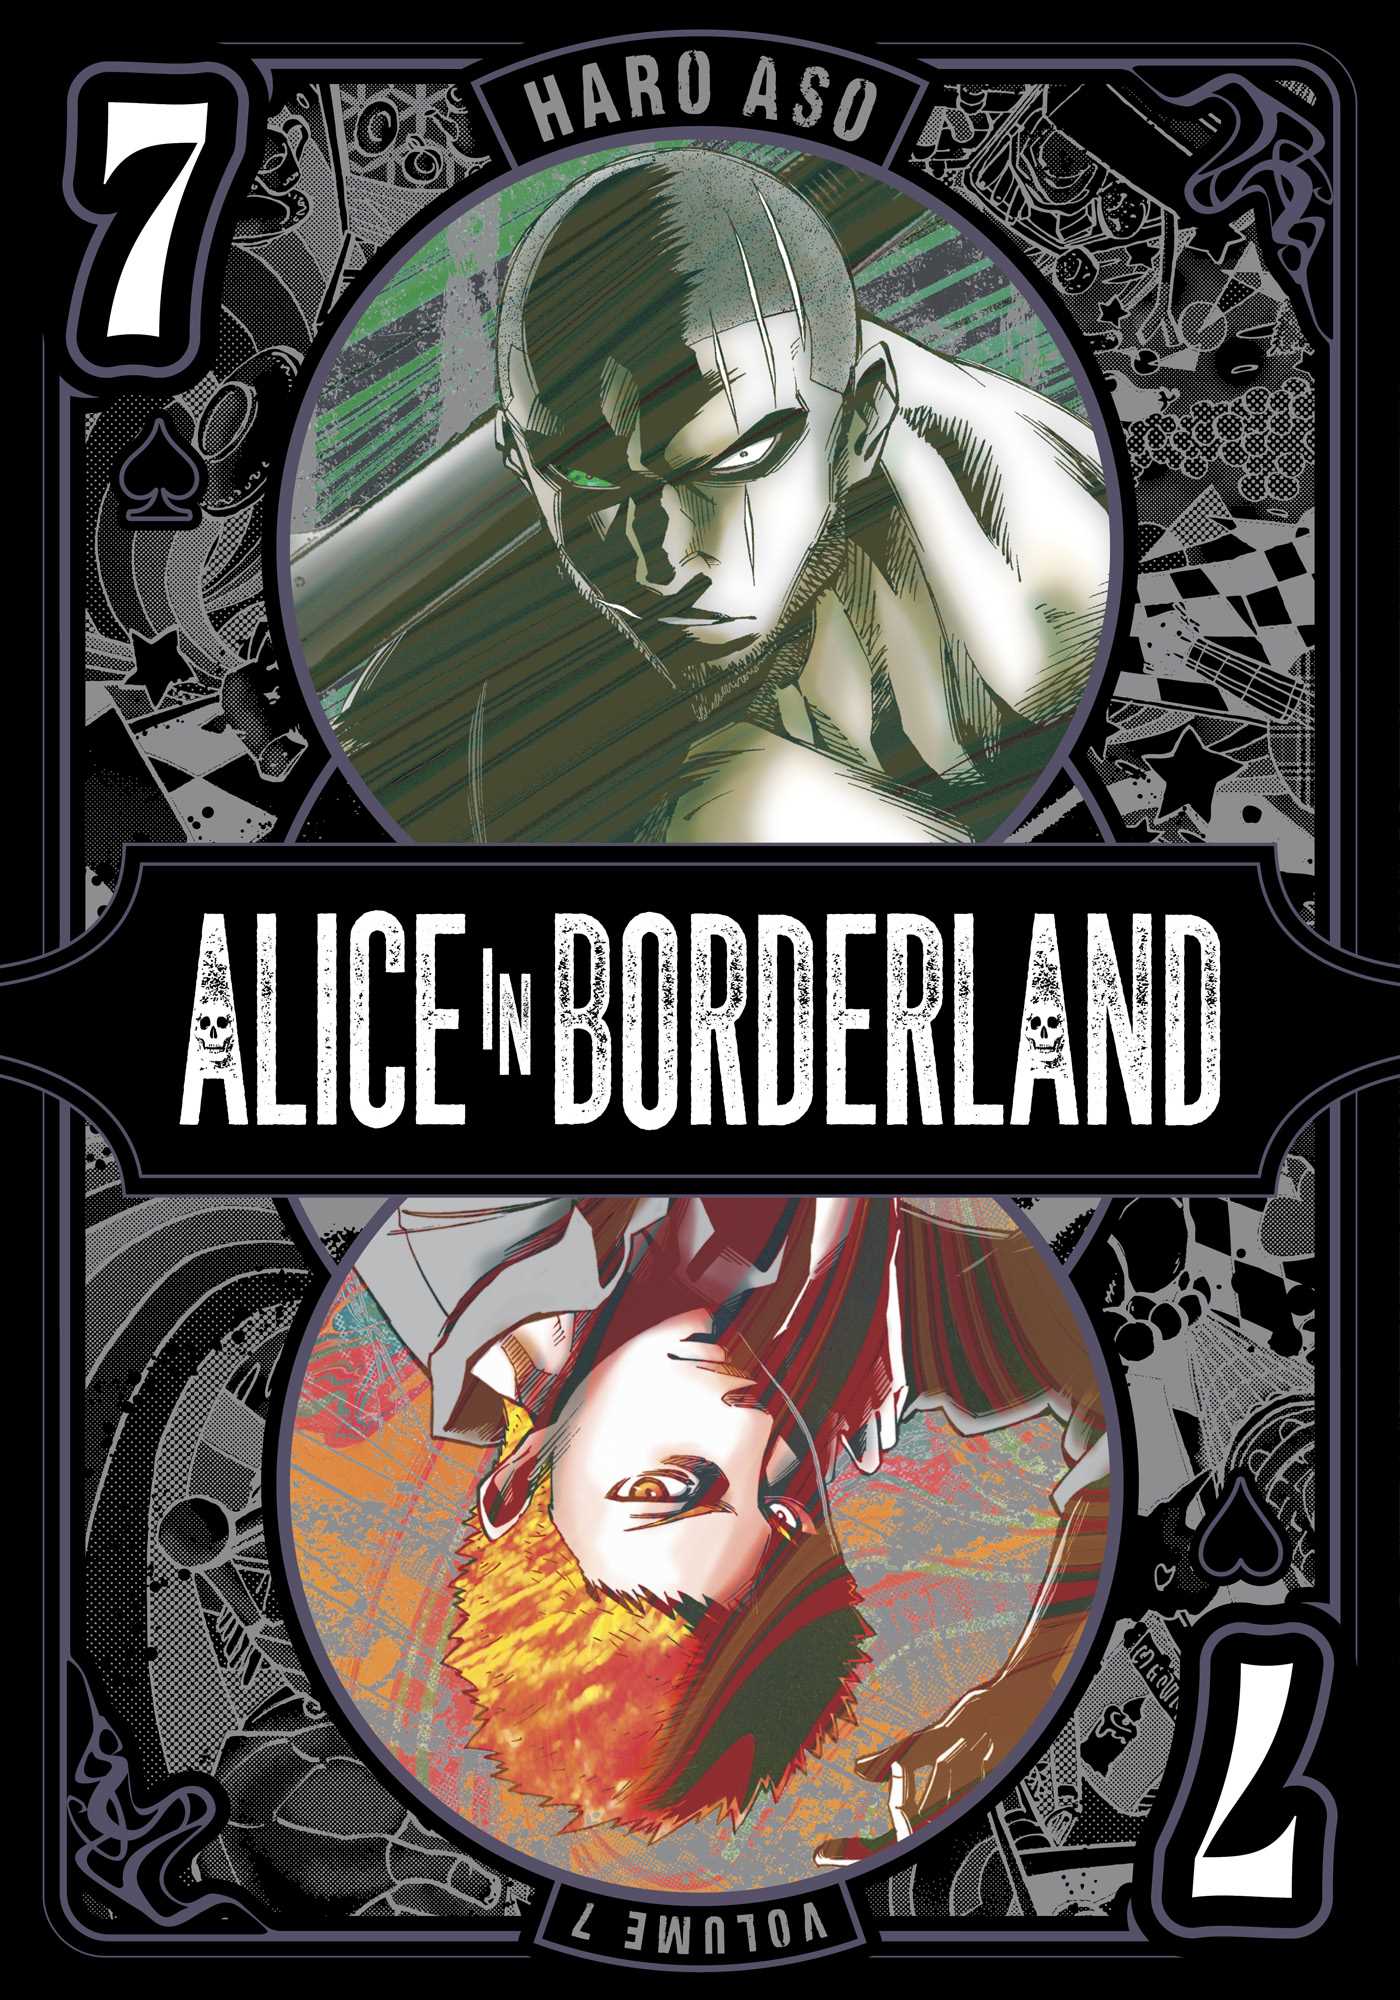 Alice in Borderland Vol.7 | Aso, Haro (Auteur)